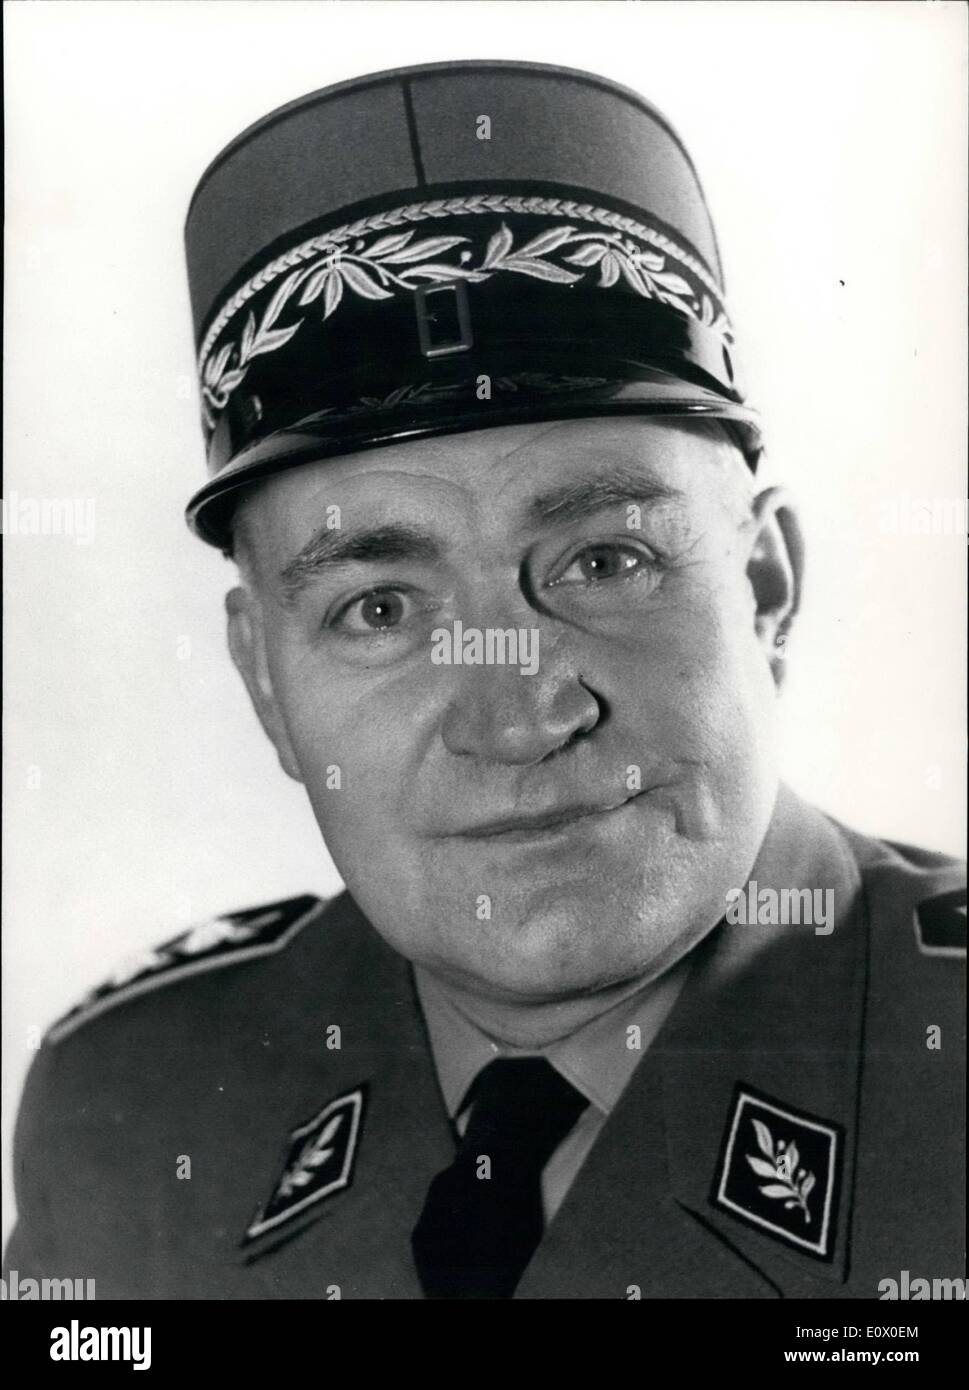 Novembre 11, 1964 - Nouveau chef de l'armée suisse. M. Paul Gygli a été élu  en tant que nouveau chef de l'état-major général de l'armée suisse  d'aujourd'hui. Il est le plus haut